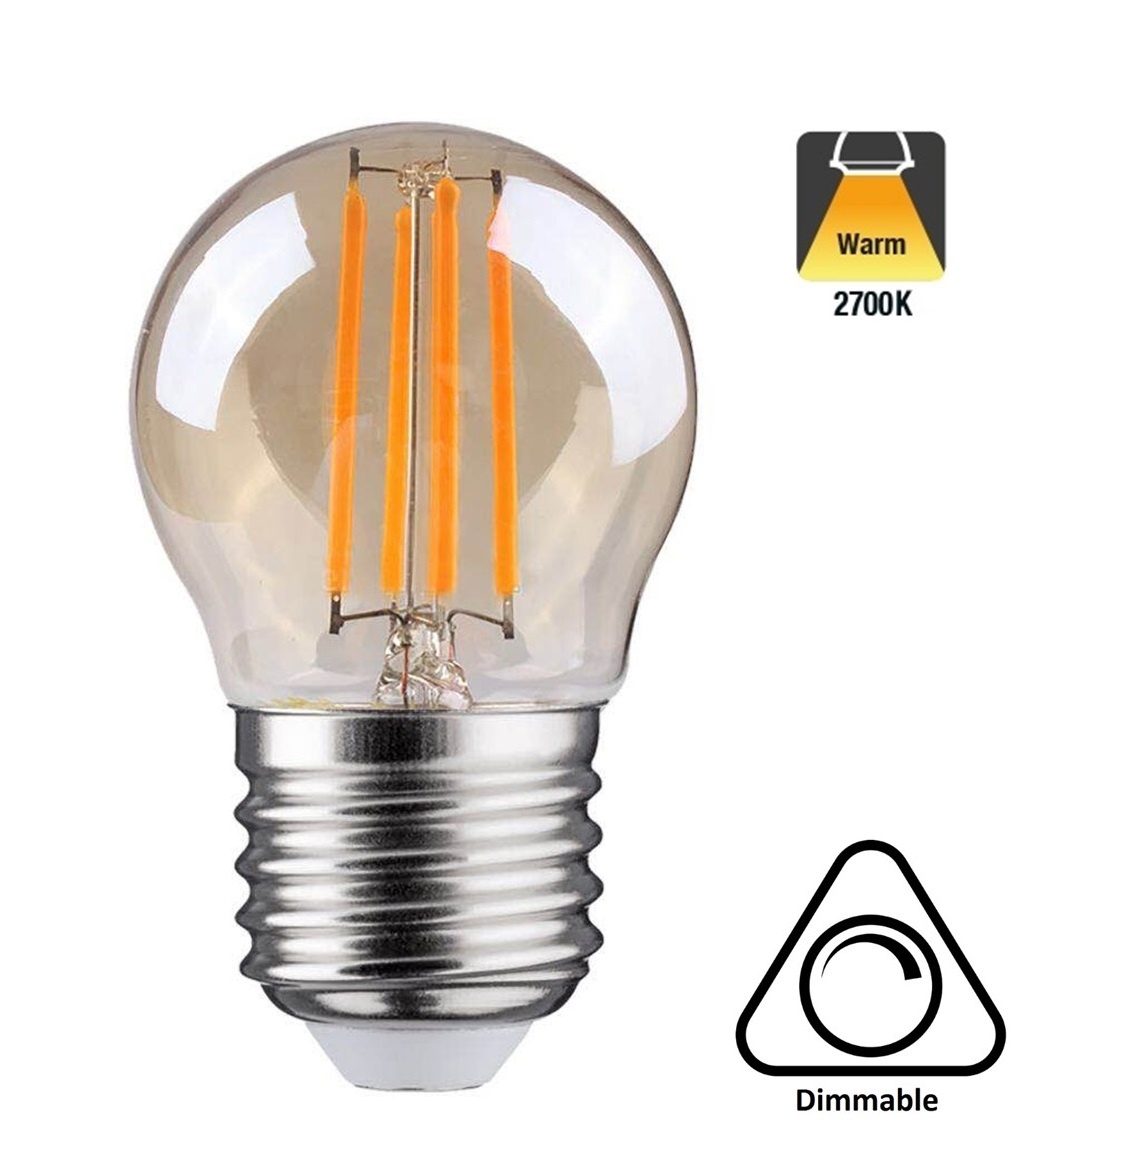 Canberra levering aan huis de eerste E27 LED Lamp | G45 | Dimbaar | 2 Jaar Garantie - Ledlampaanbiedingen.nl